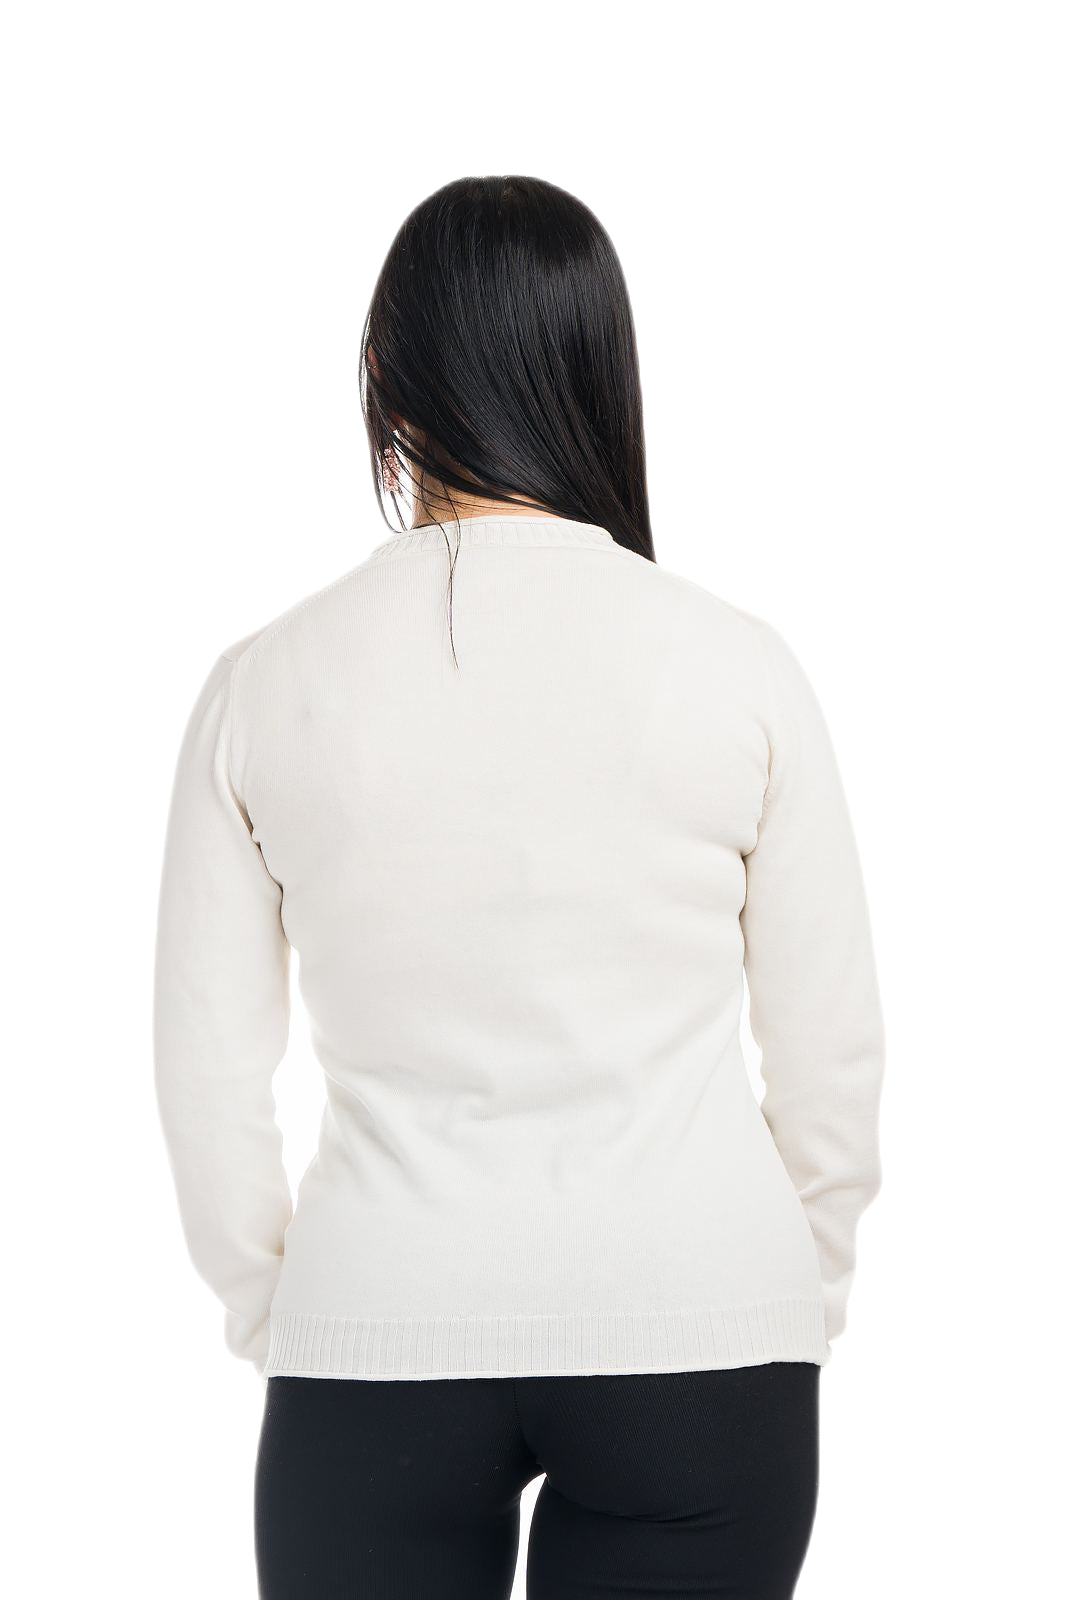 retro maglia donna leggera manica lunga bianca